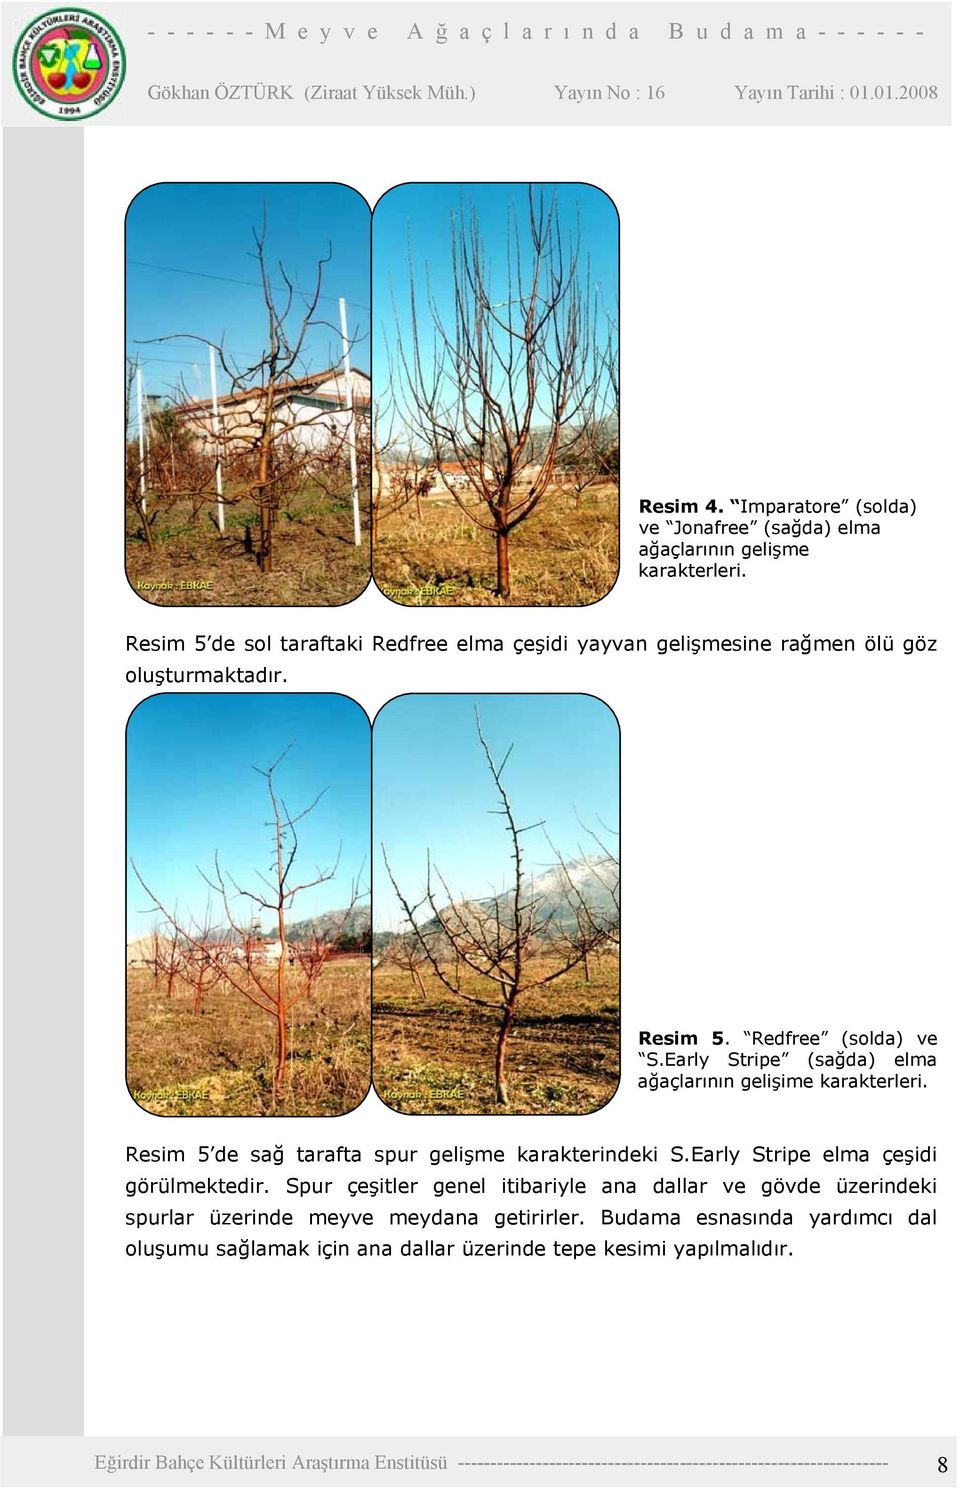 Early Stripe (sağda) elma ağaçlarının gelişime karakterleri. Resim 5 de sağ tarafta spur gelişme karakterindeki S.Early Stripe elma çeşidi görülmektedir.